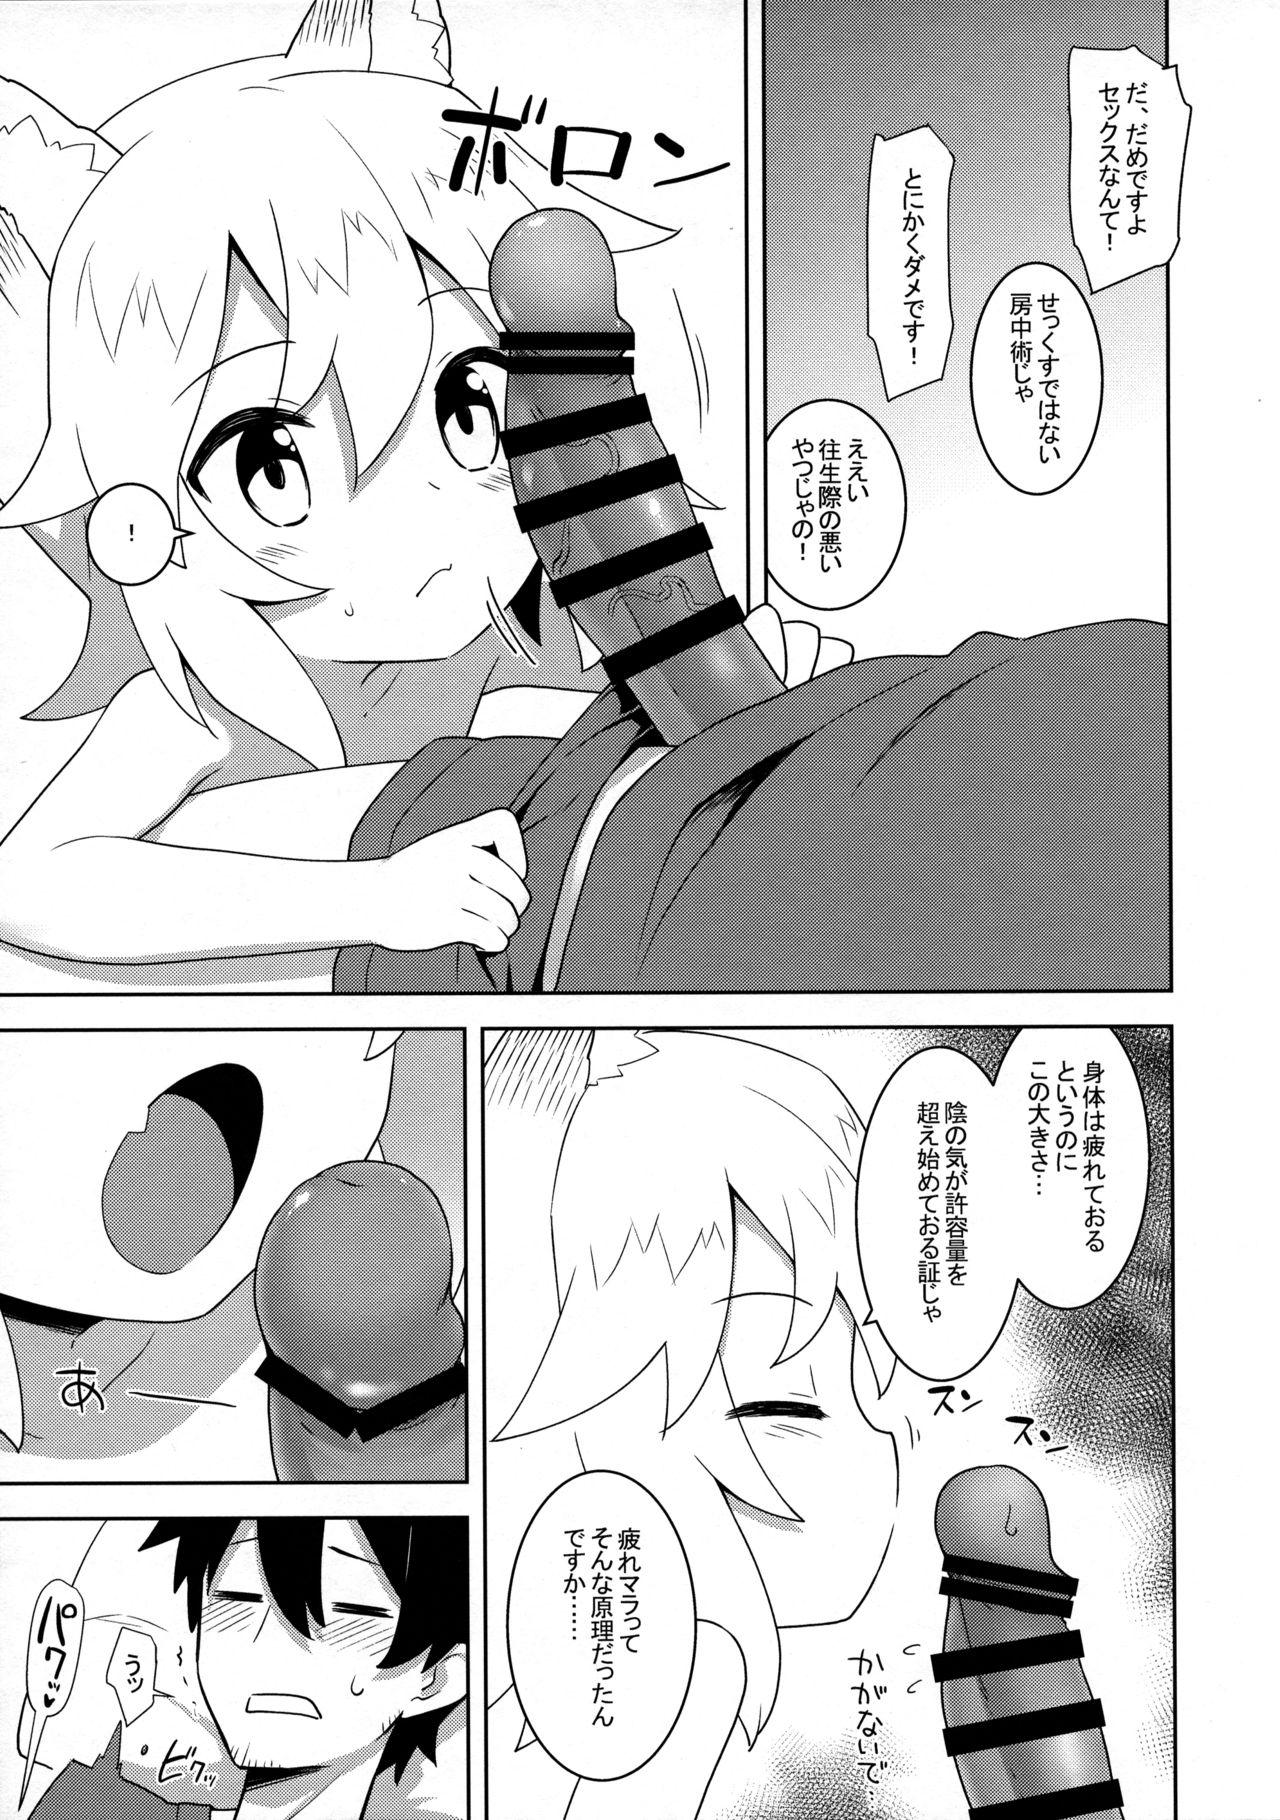 Bisex Senko-san, Yobai Suru. - Sewayaki kitsune no senko-san Topless - Page 3